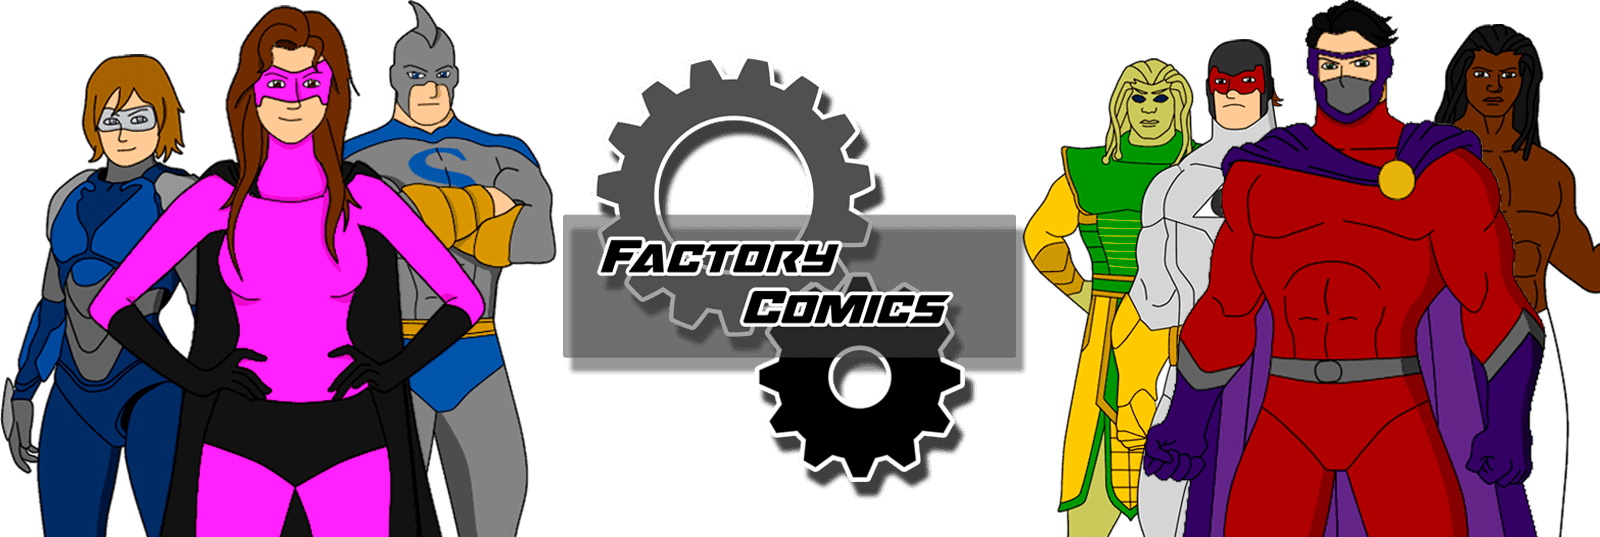 Factory Comics